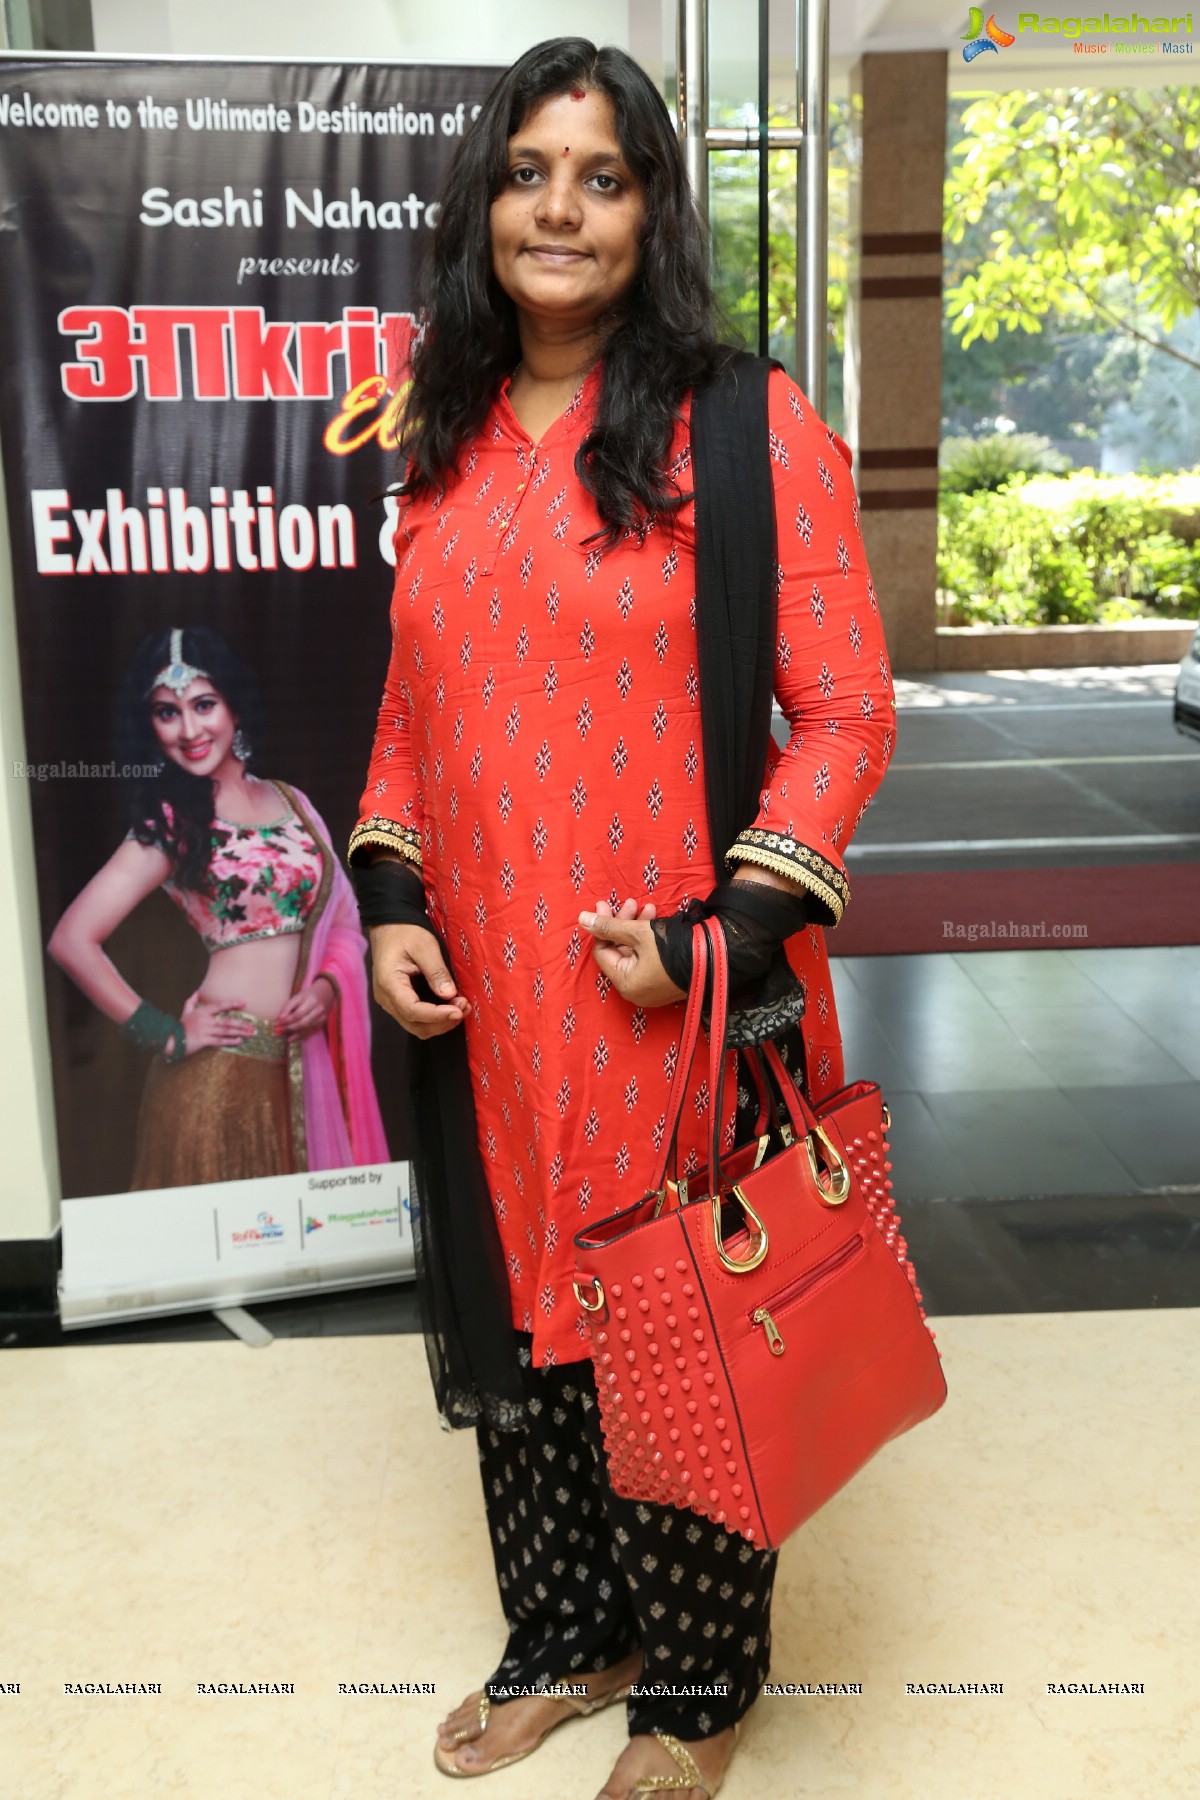 Akritti Elite Exhibition and Sale (November 2016) at Taj Deccan, Hyderabad